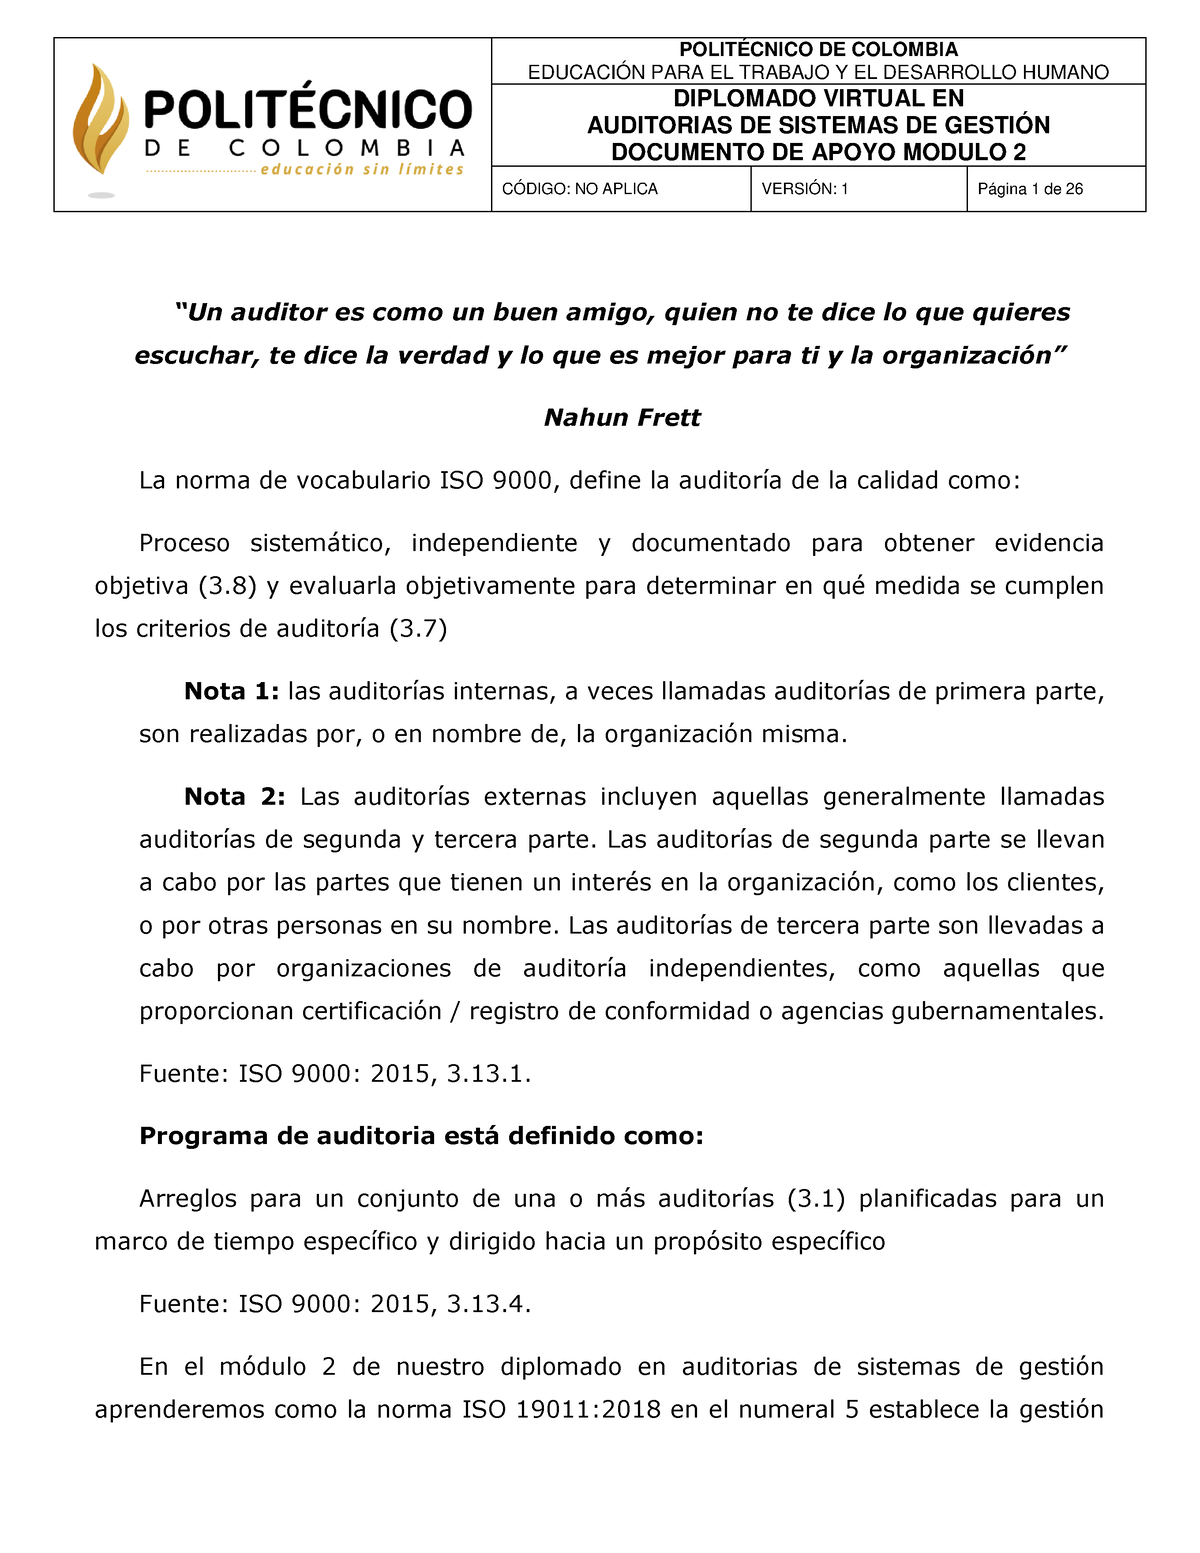 Documento de Apoyo Modulo 2 - EDUCACIÓN PARA EL TRABAJO Y EL DESARROLLO  HUMANO DIPLOMADO VIRTUAL EN - Studocu